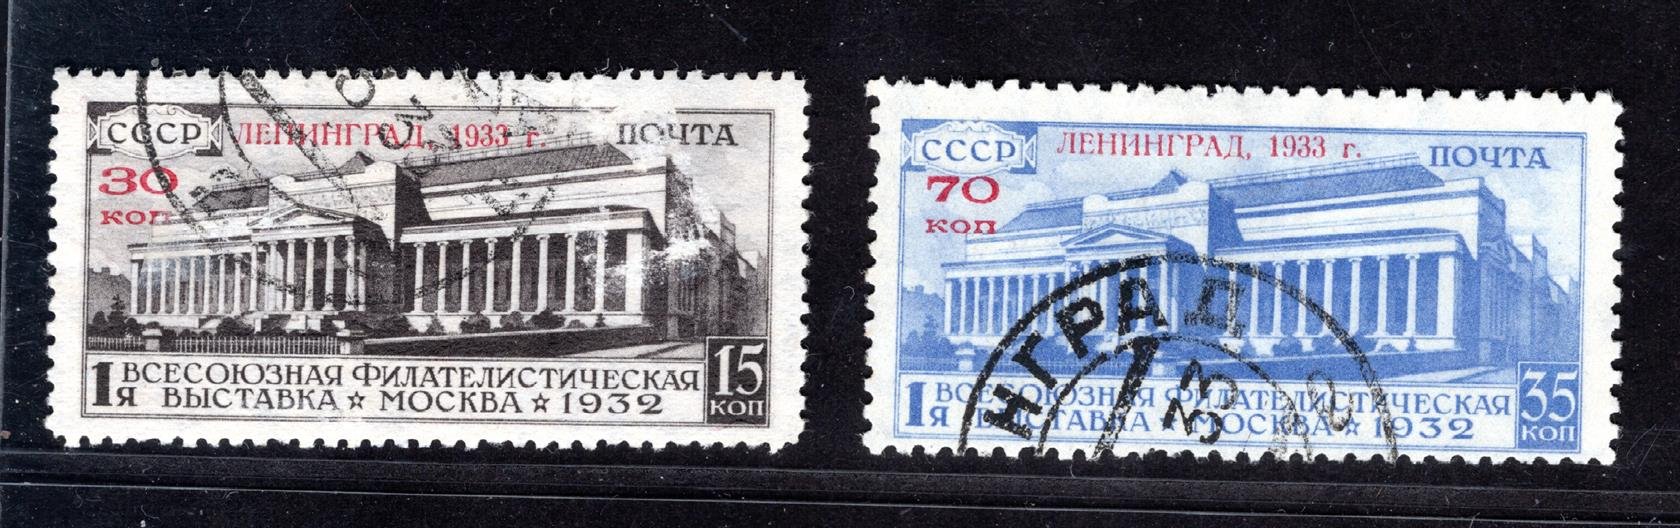 Sovětský svaz - Mi. 427 - 8, výstava známek, přetisk